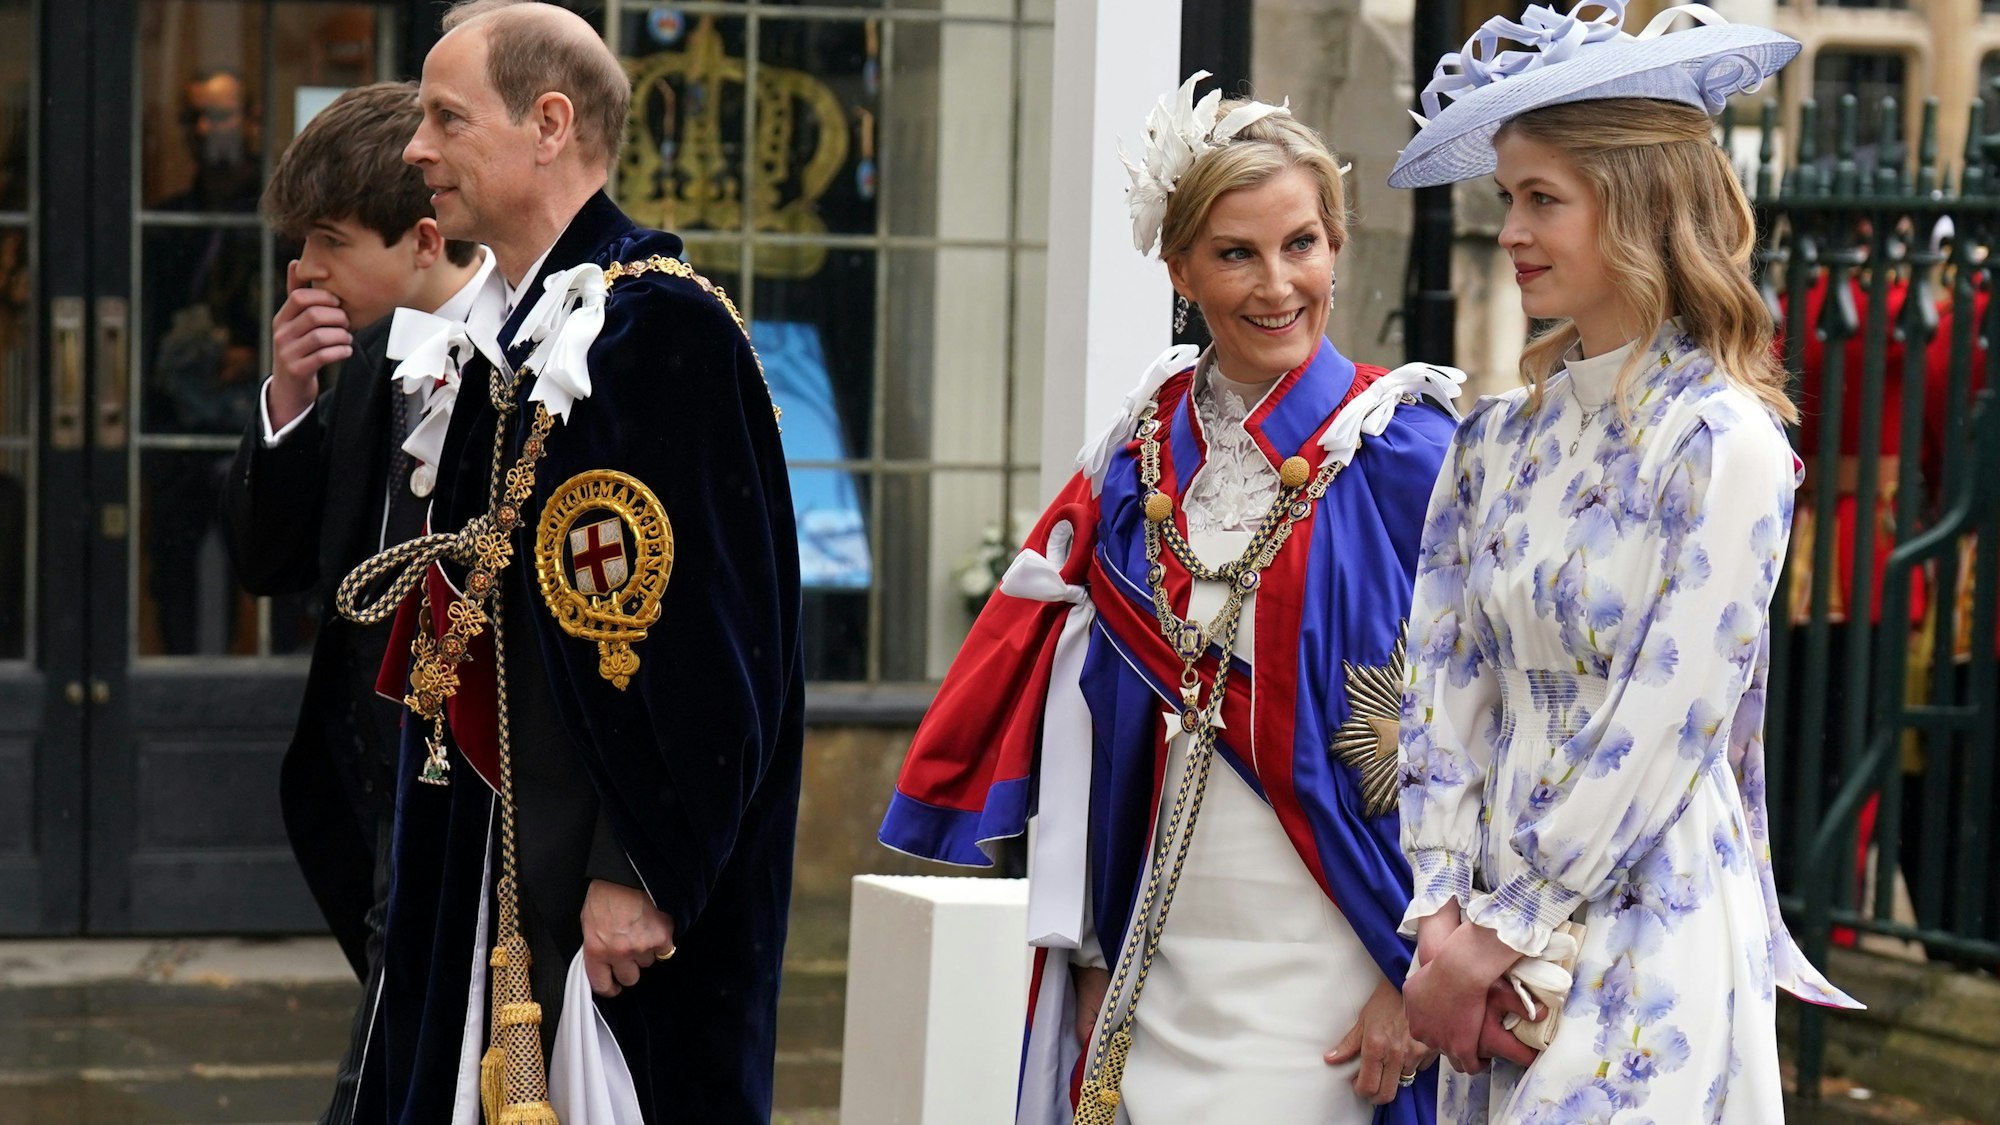 Prinz Edward, Herzog von Edinburgh, und seine Frau Sophie, Herzogin von Edinburgh, kommen mit Tochter Lady Louise Windsor (r) und ihrem Sohn James Alexander Mountbatten-Windsor, Earl of Wessex, vor der Krönungszeremonie von König Charles III. und Königin Camilla in der Westminster Abbey in London an.